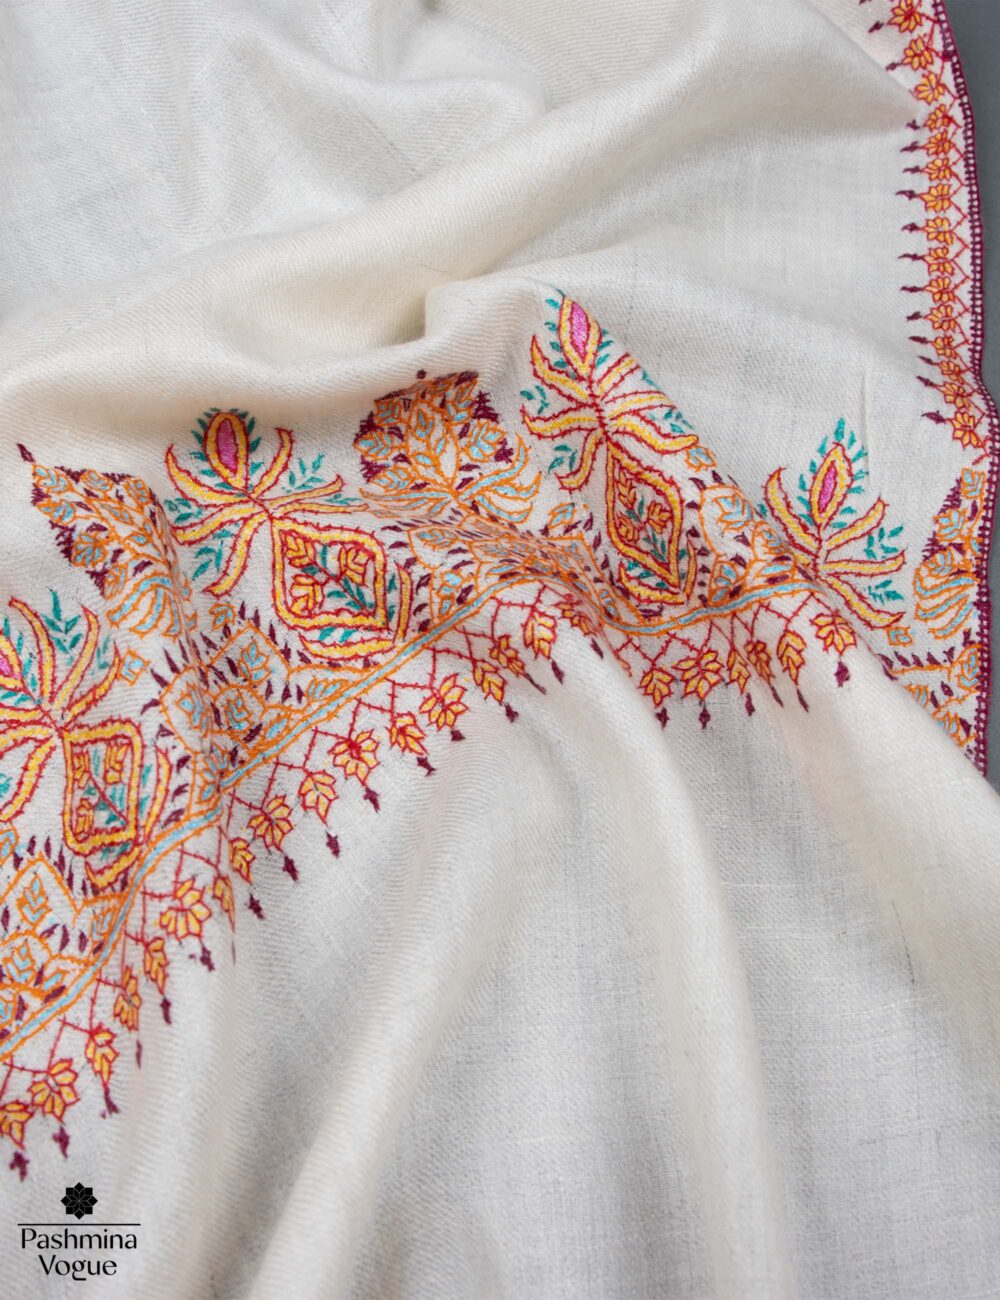 Pashmina-White-Embroidered-Wrap